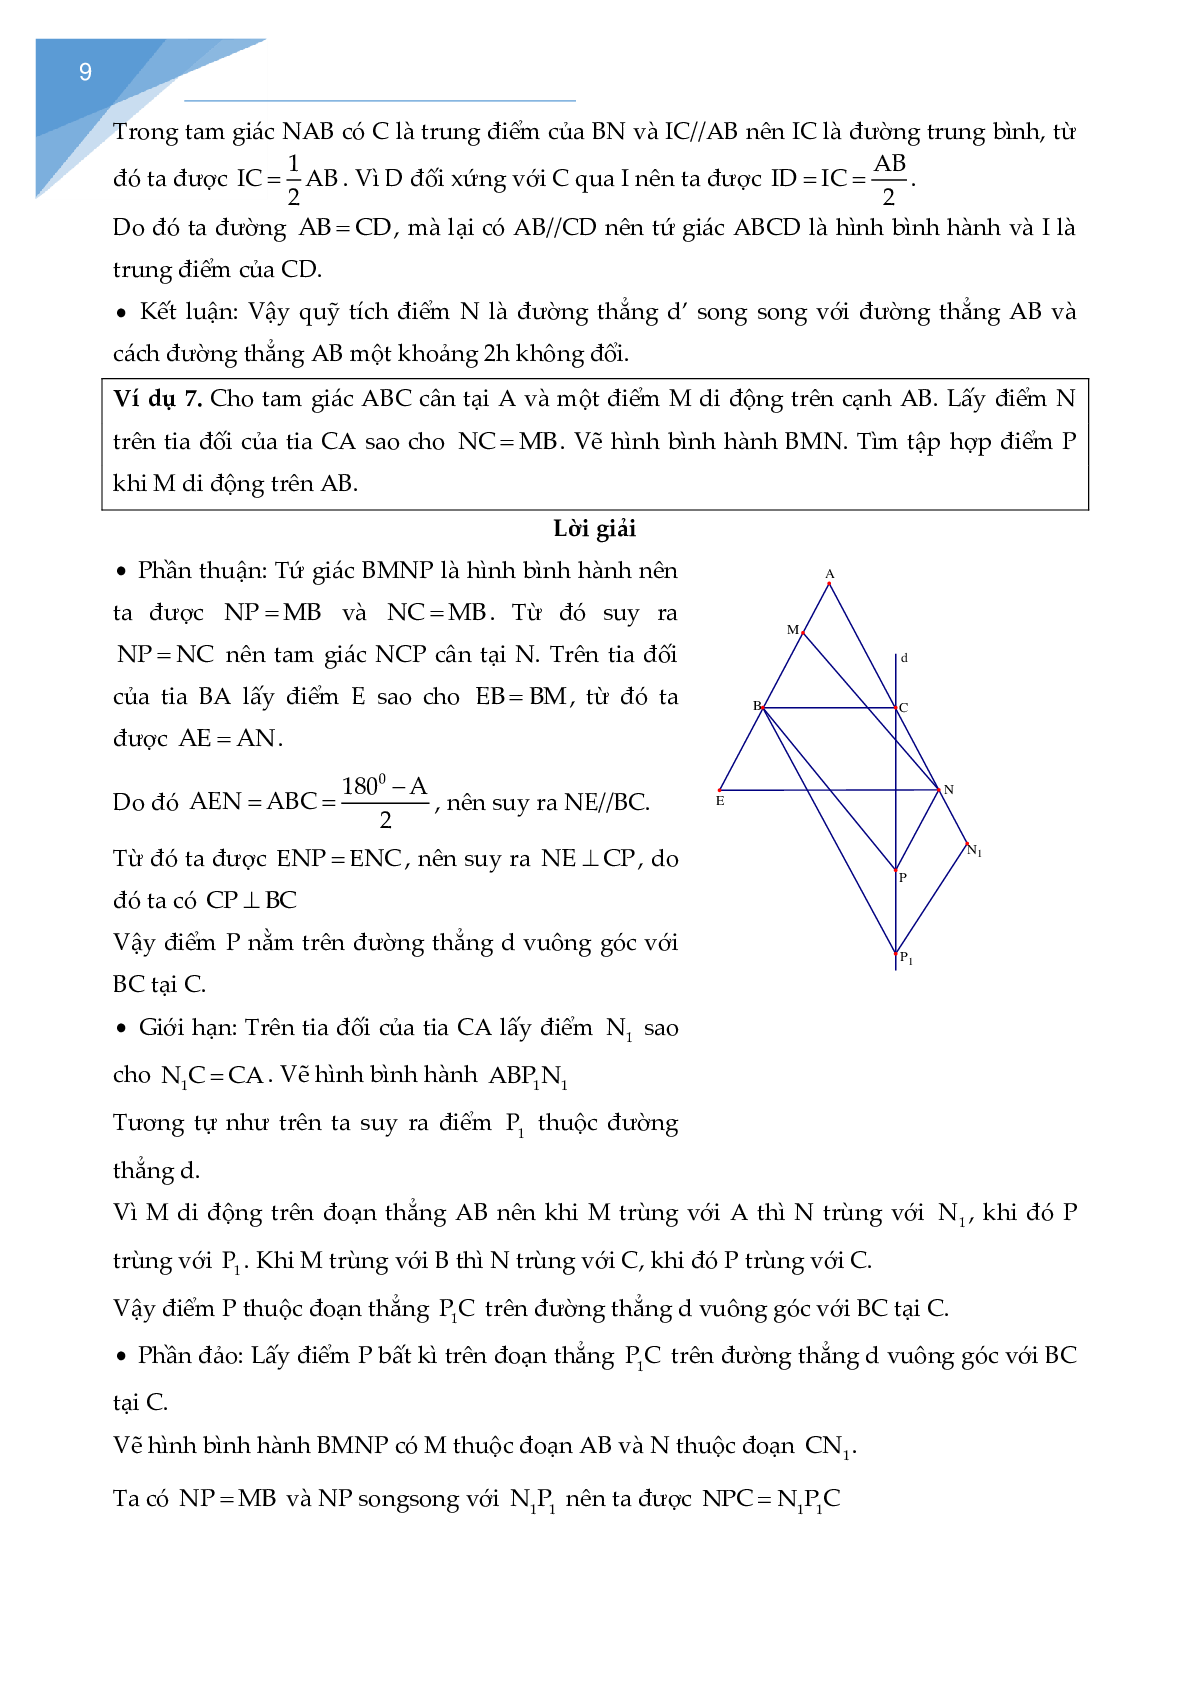 Chuyên đề các bài toán quỹ tích - tập hợp điểm (trang 10)